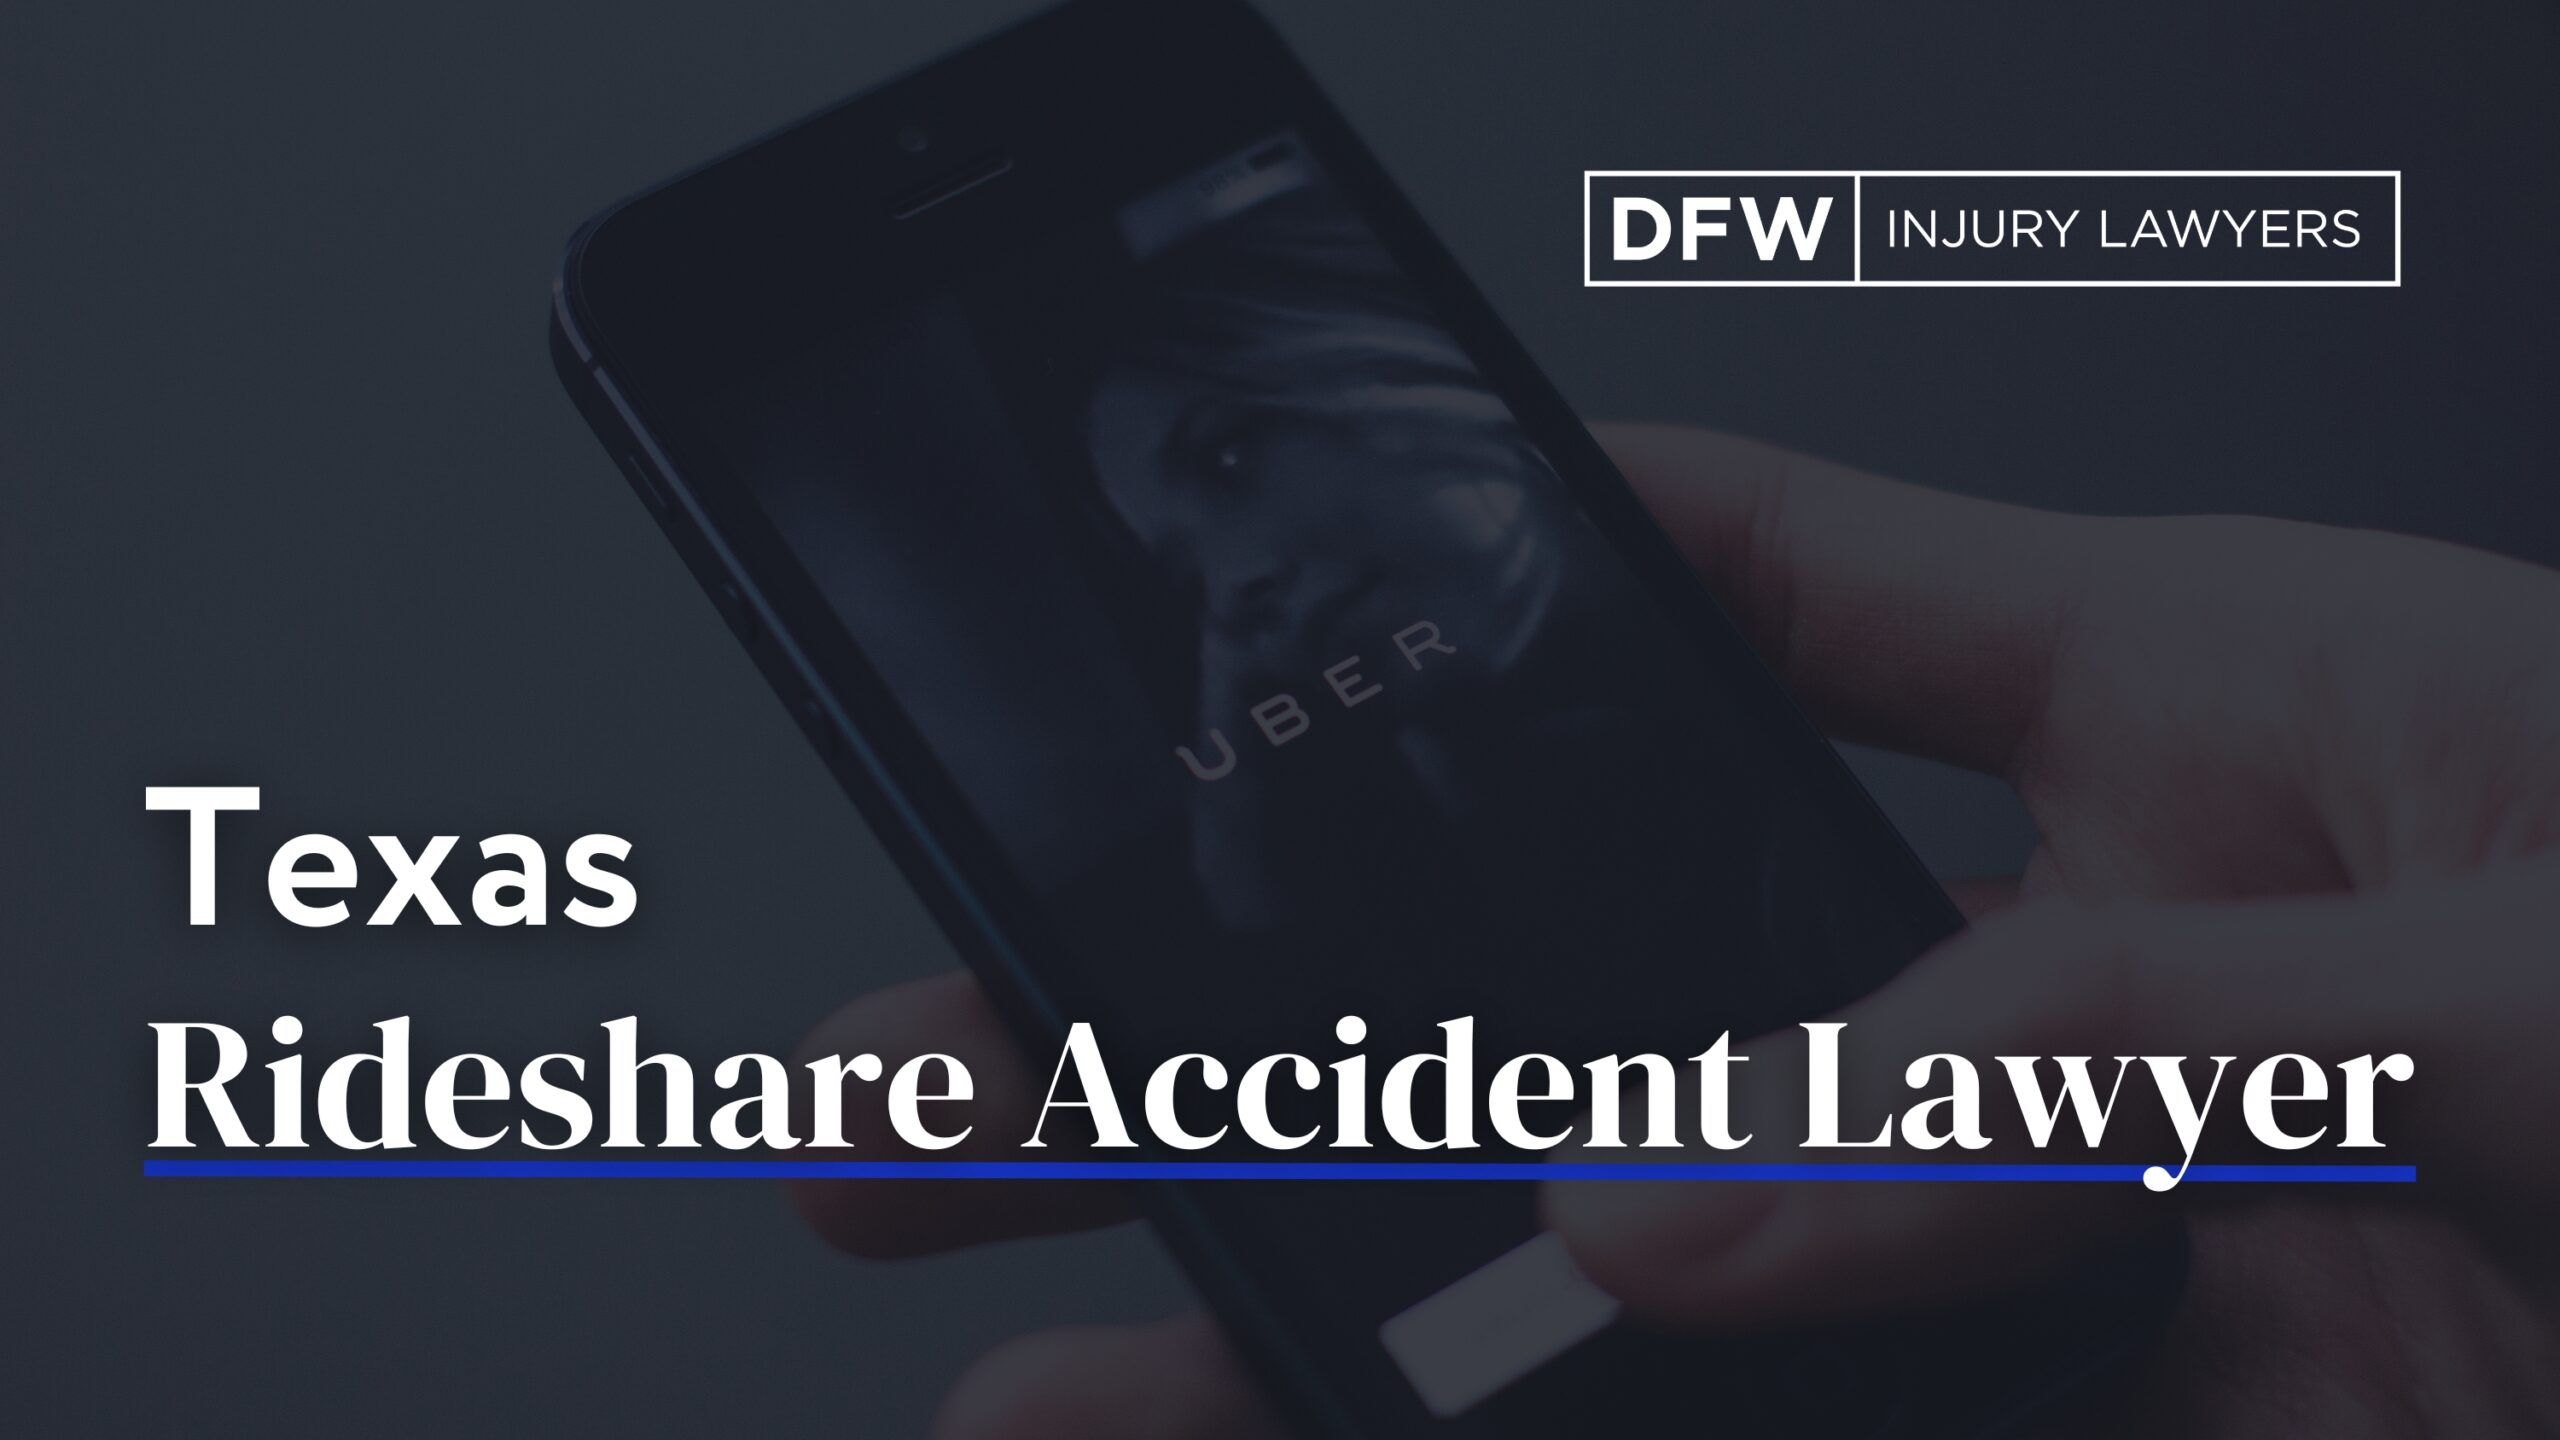 Texas Rideshare accidente abogado - DFW